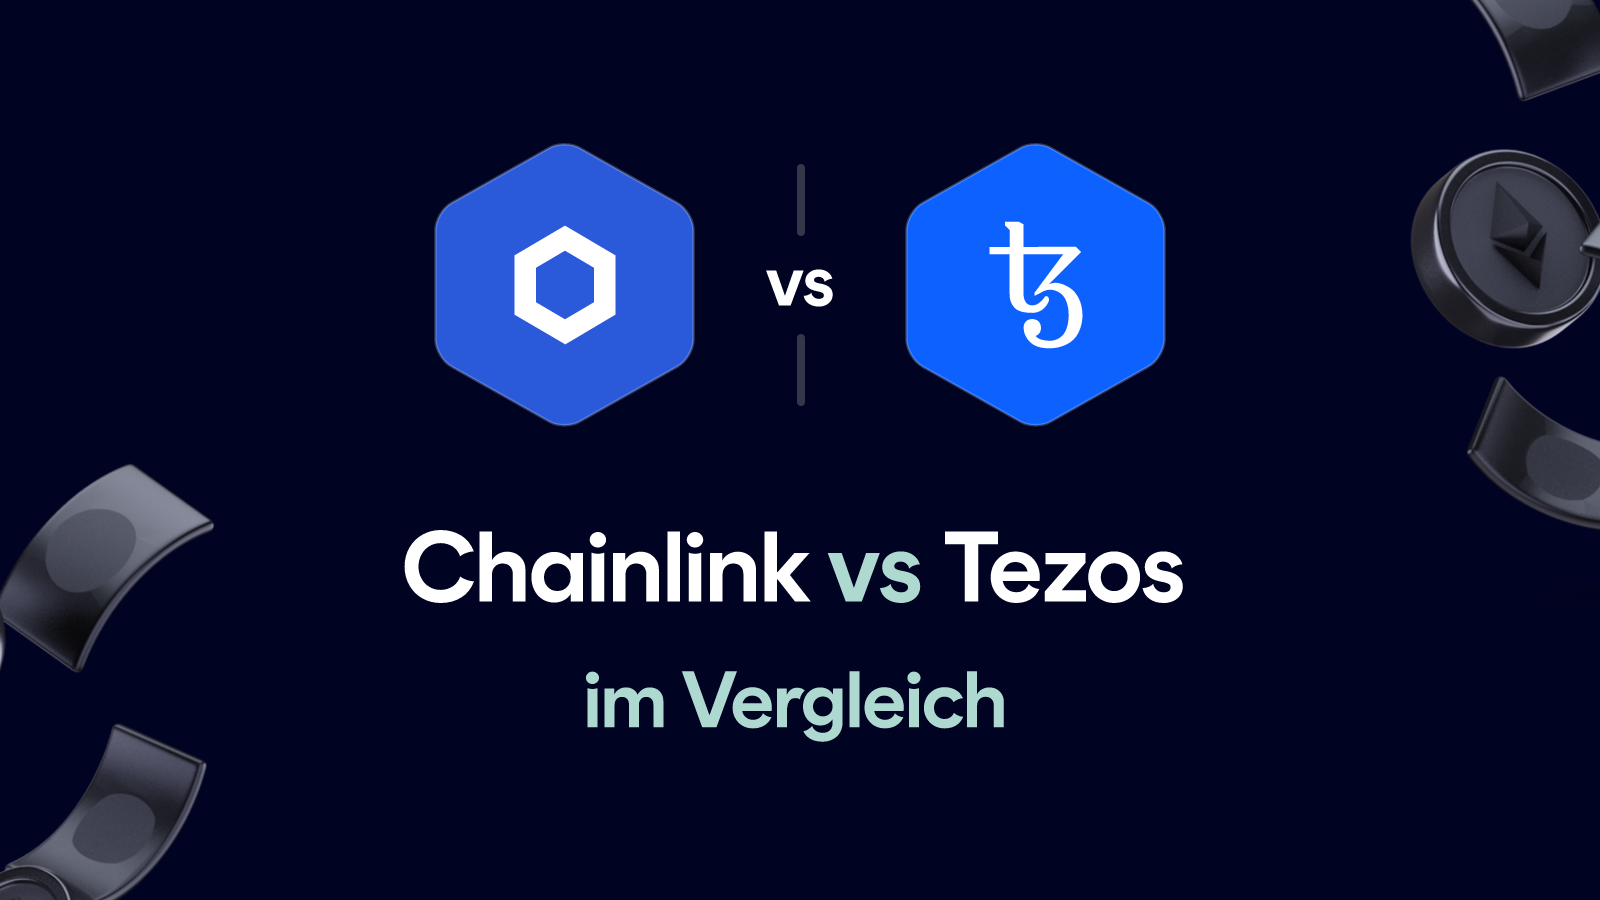 Chainlink vs Tezos